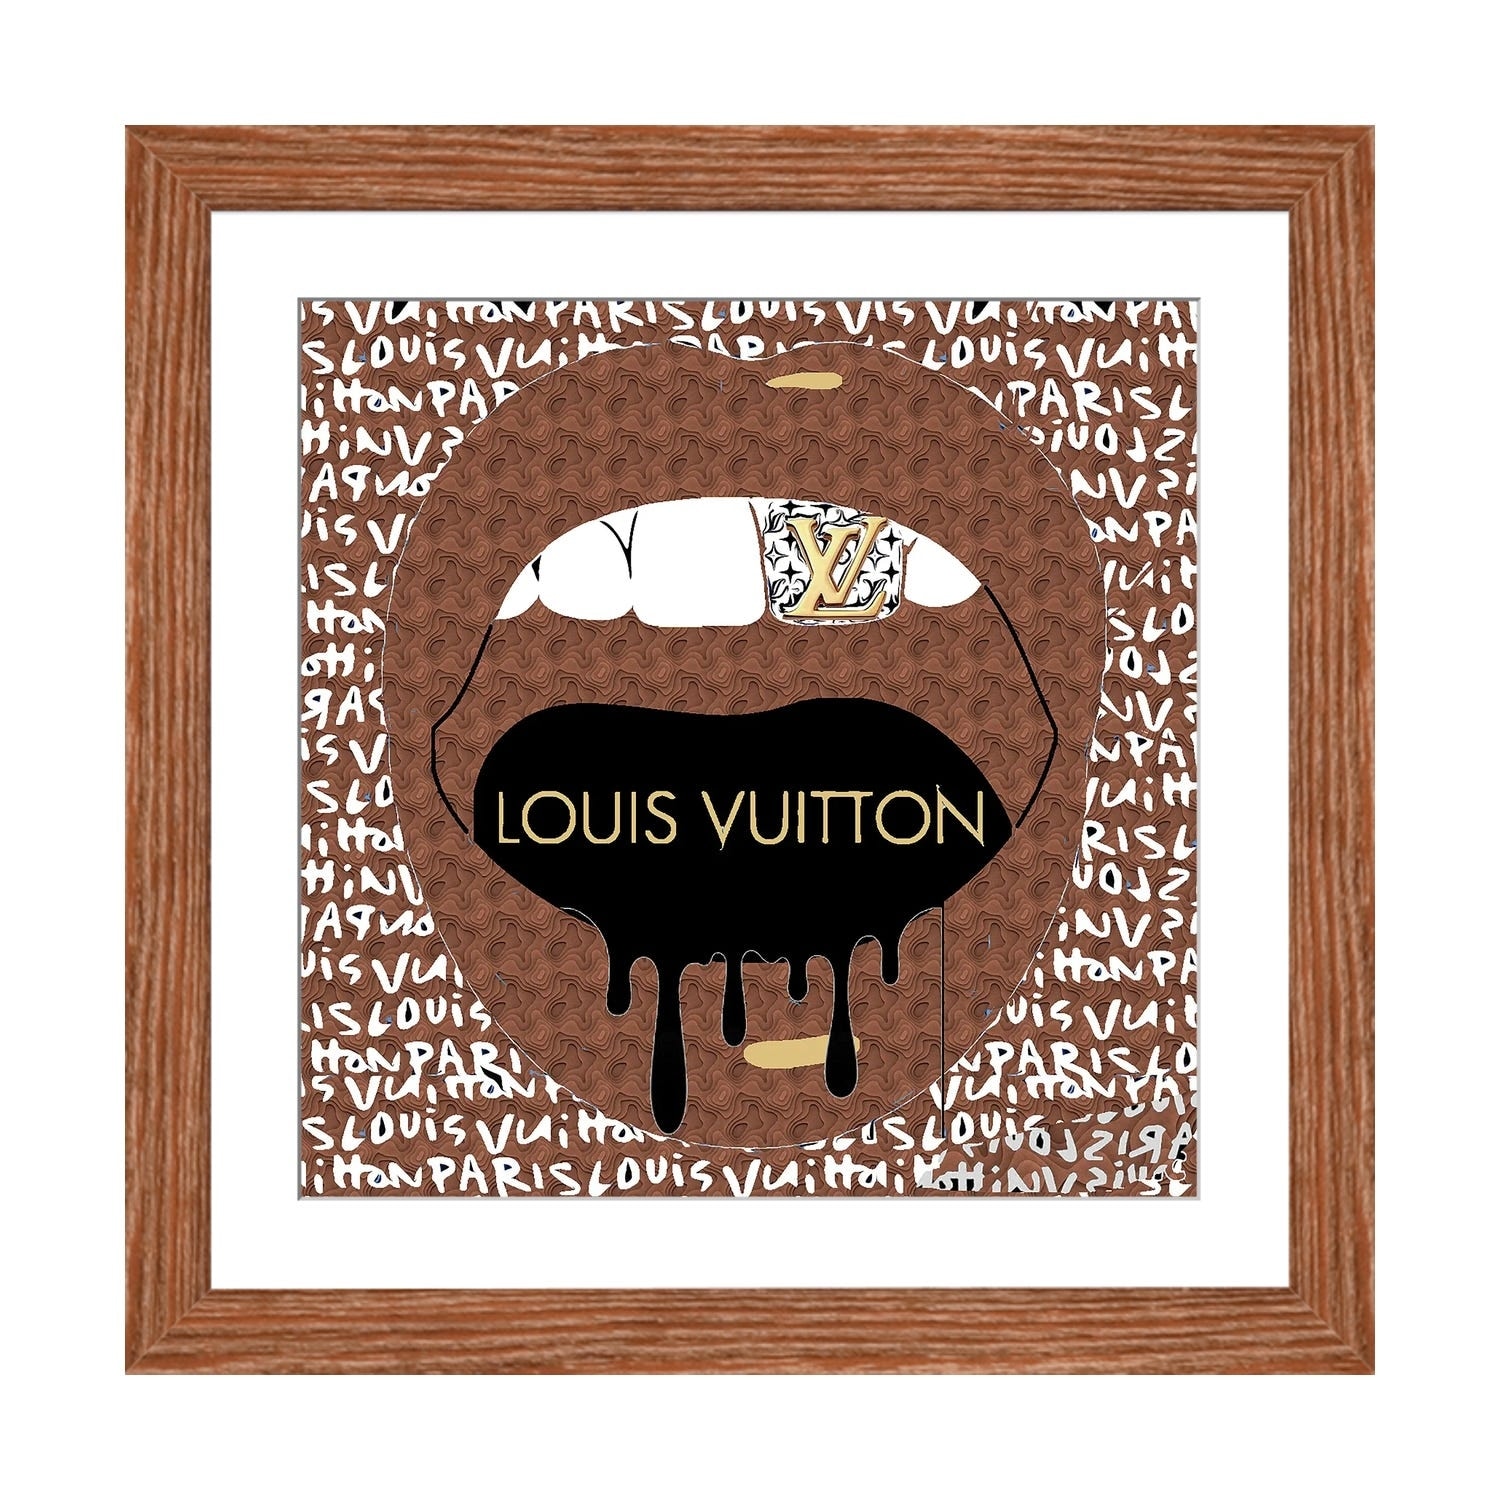 Louis Vuitton Abstract Art Art Print by Julie Schreiber